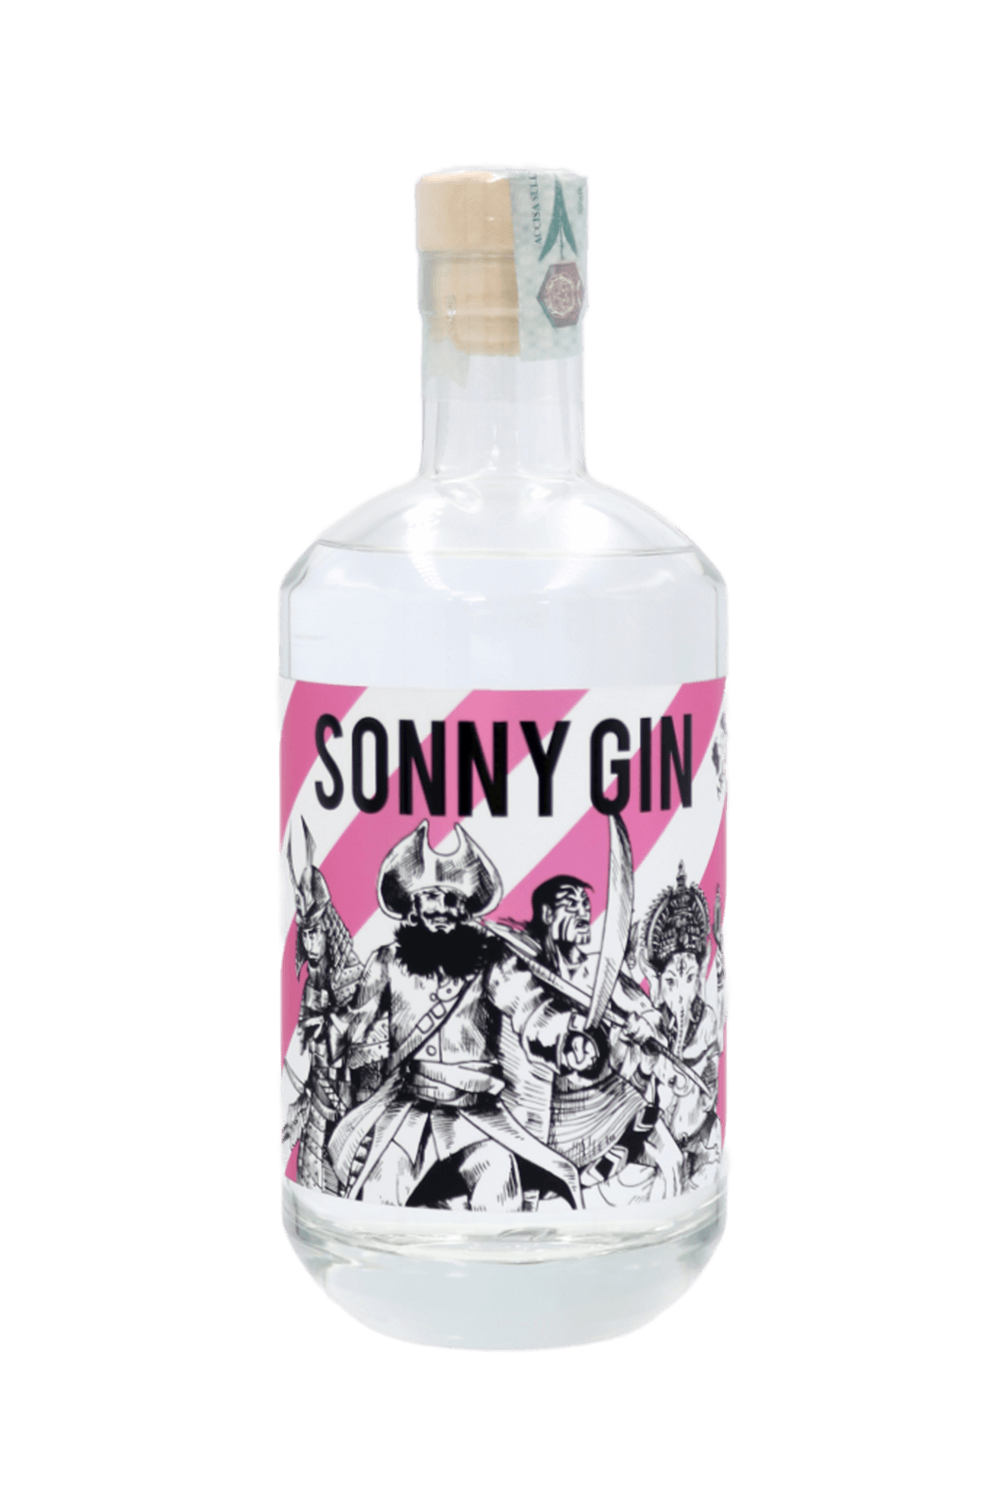 Sonny Gin